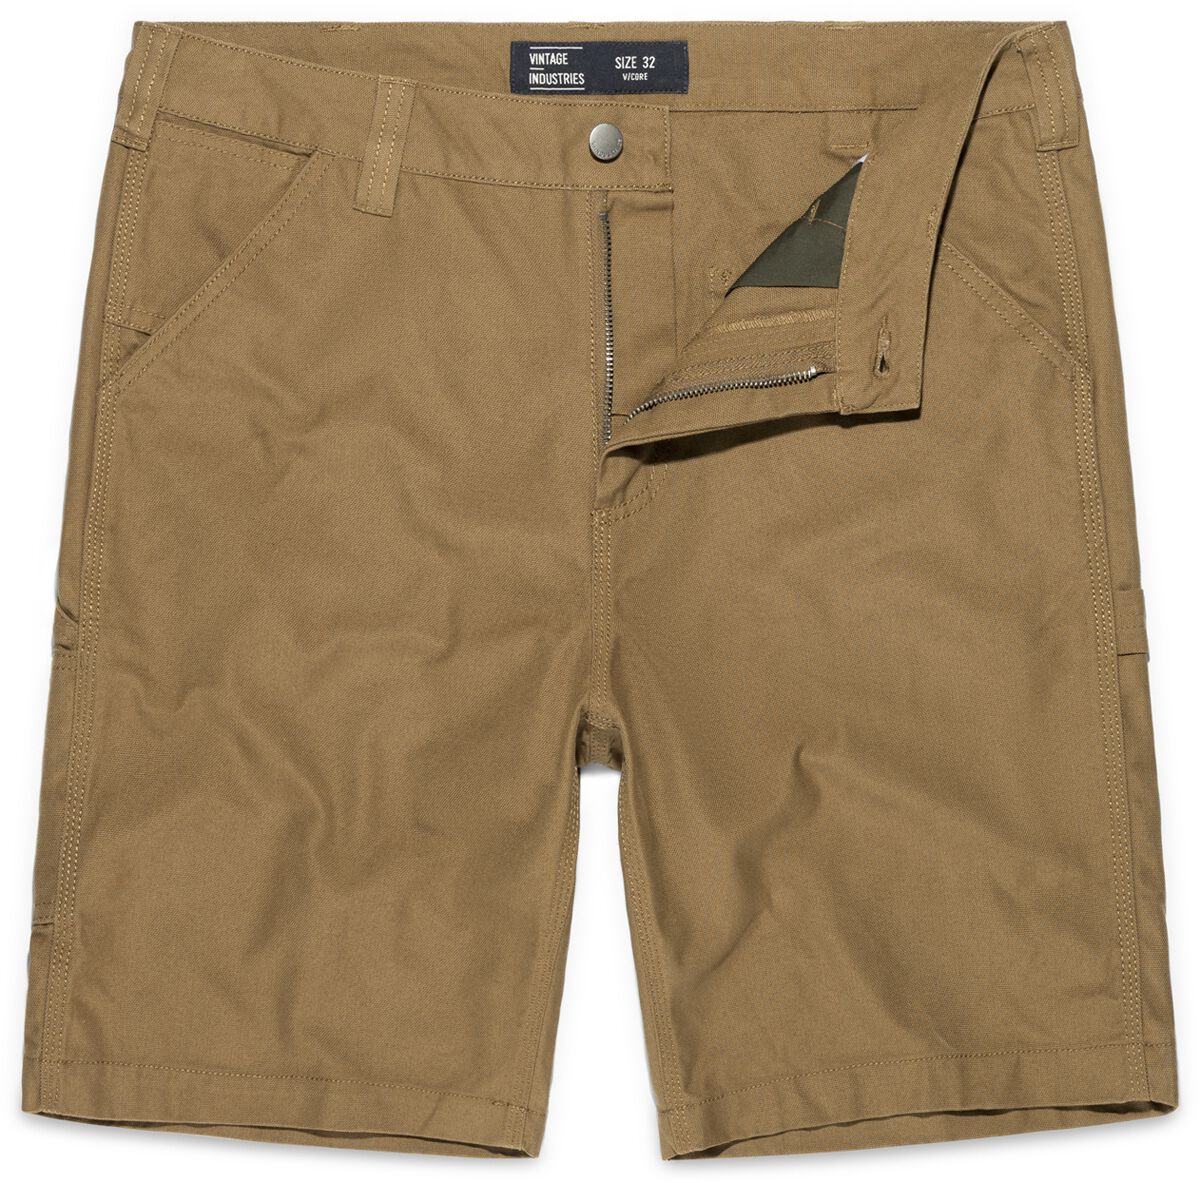 Vintage Industries Short - Dayton Shorts - 32 bis 38 - für Männer - Größe 34 - beige von Vintage Industries